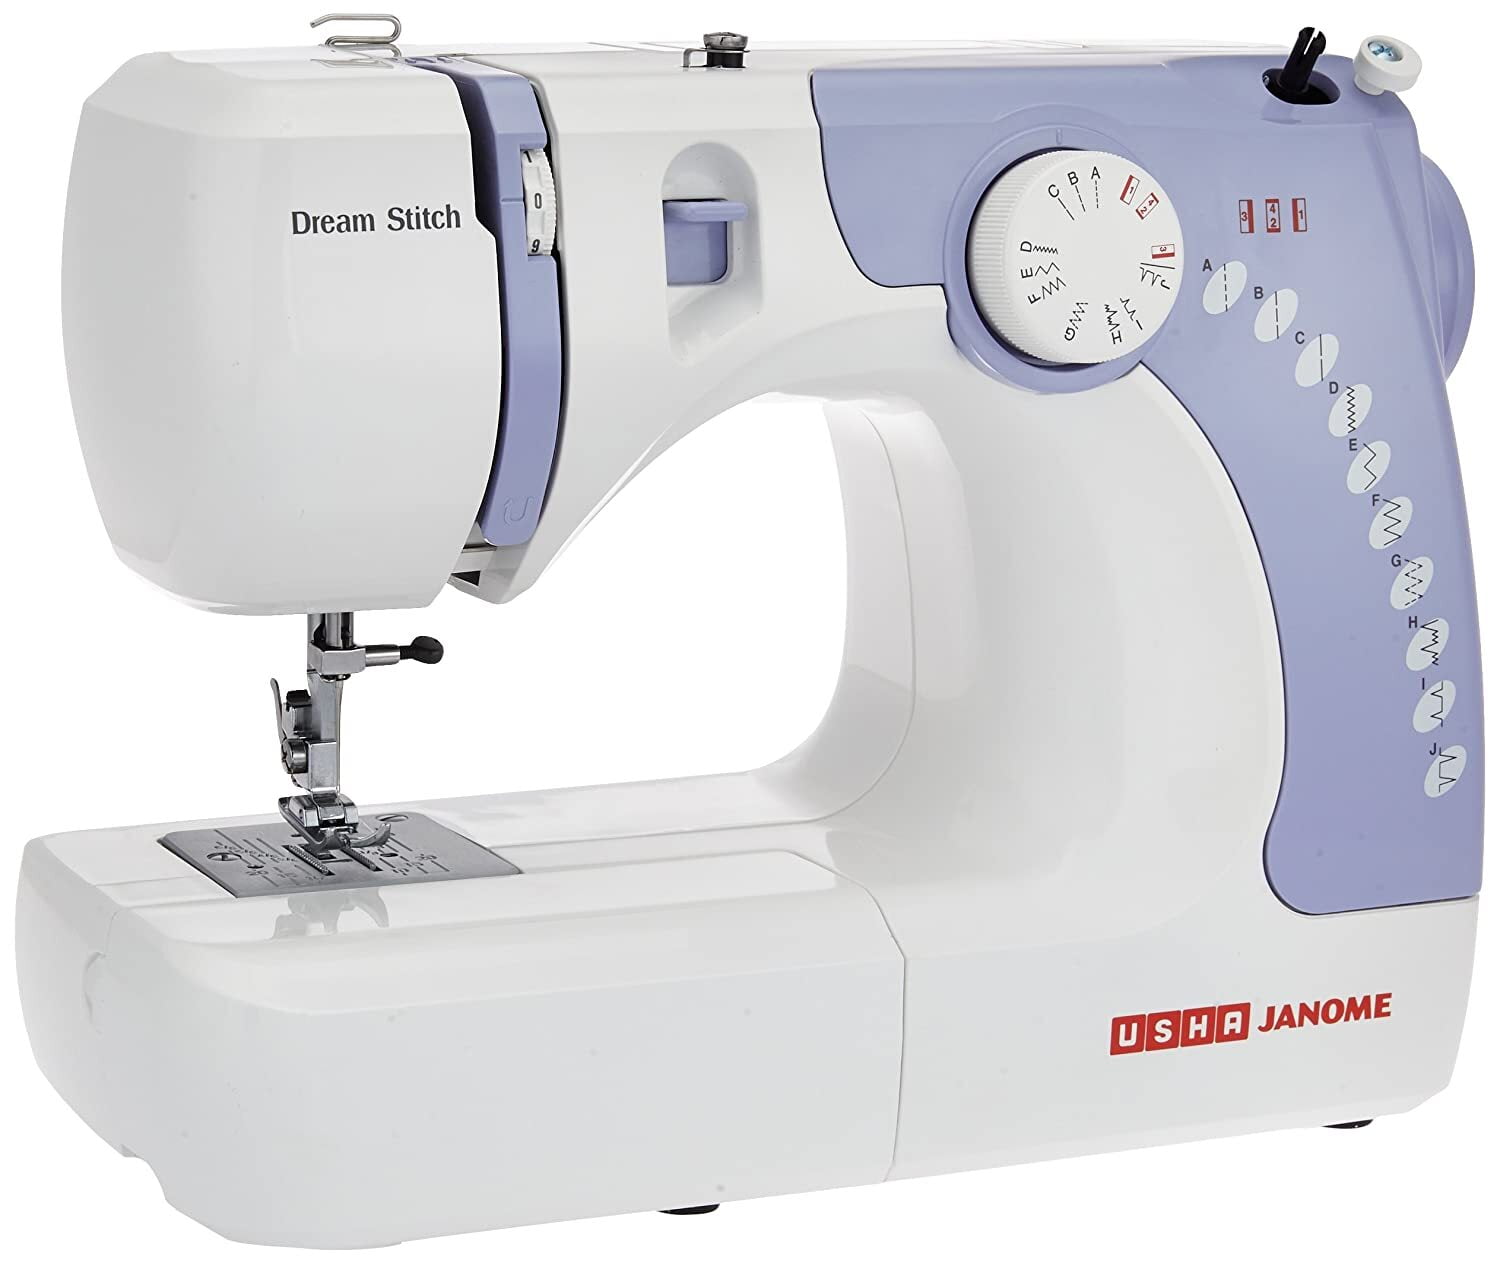 USHA Janome Dream Stitch Automatic Sewing Machine On Dillimall.Com